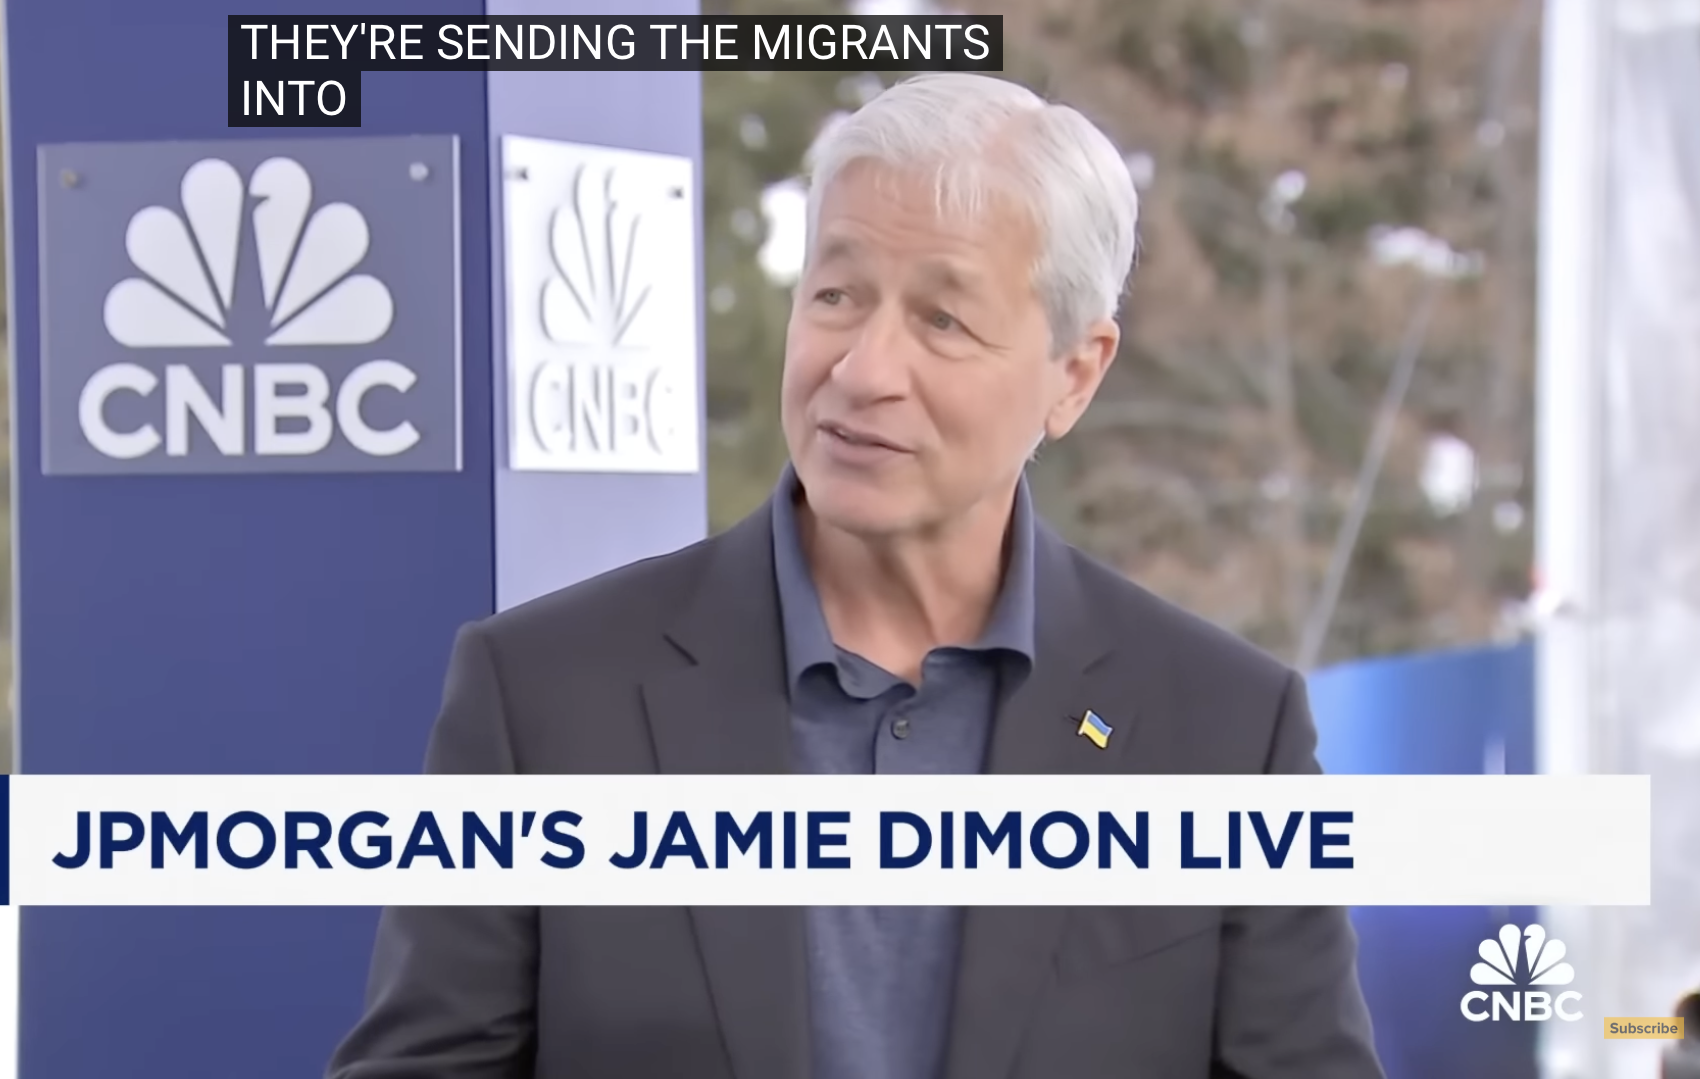 JPMorgan CEO Jamie Dimon Credits Trump’s Policies And Warns Democrats and Globalists At Davos